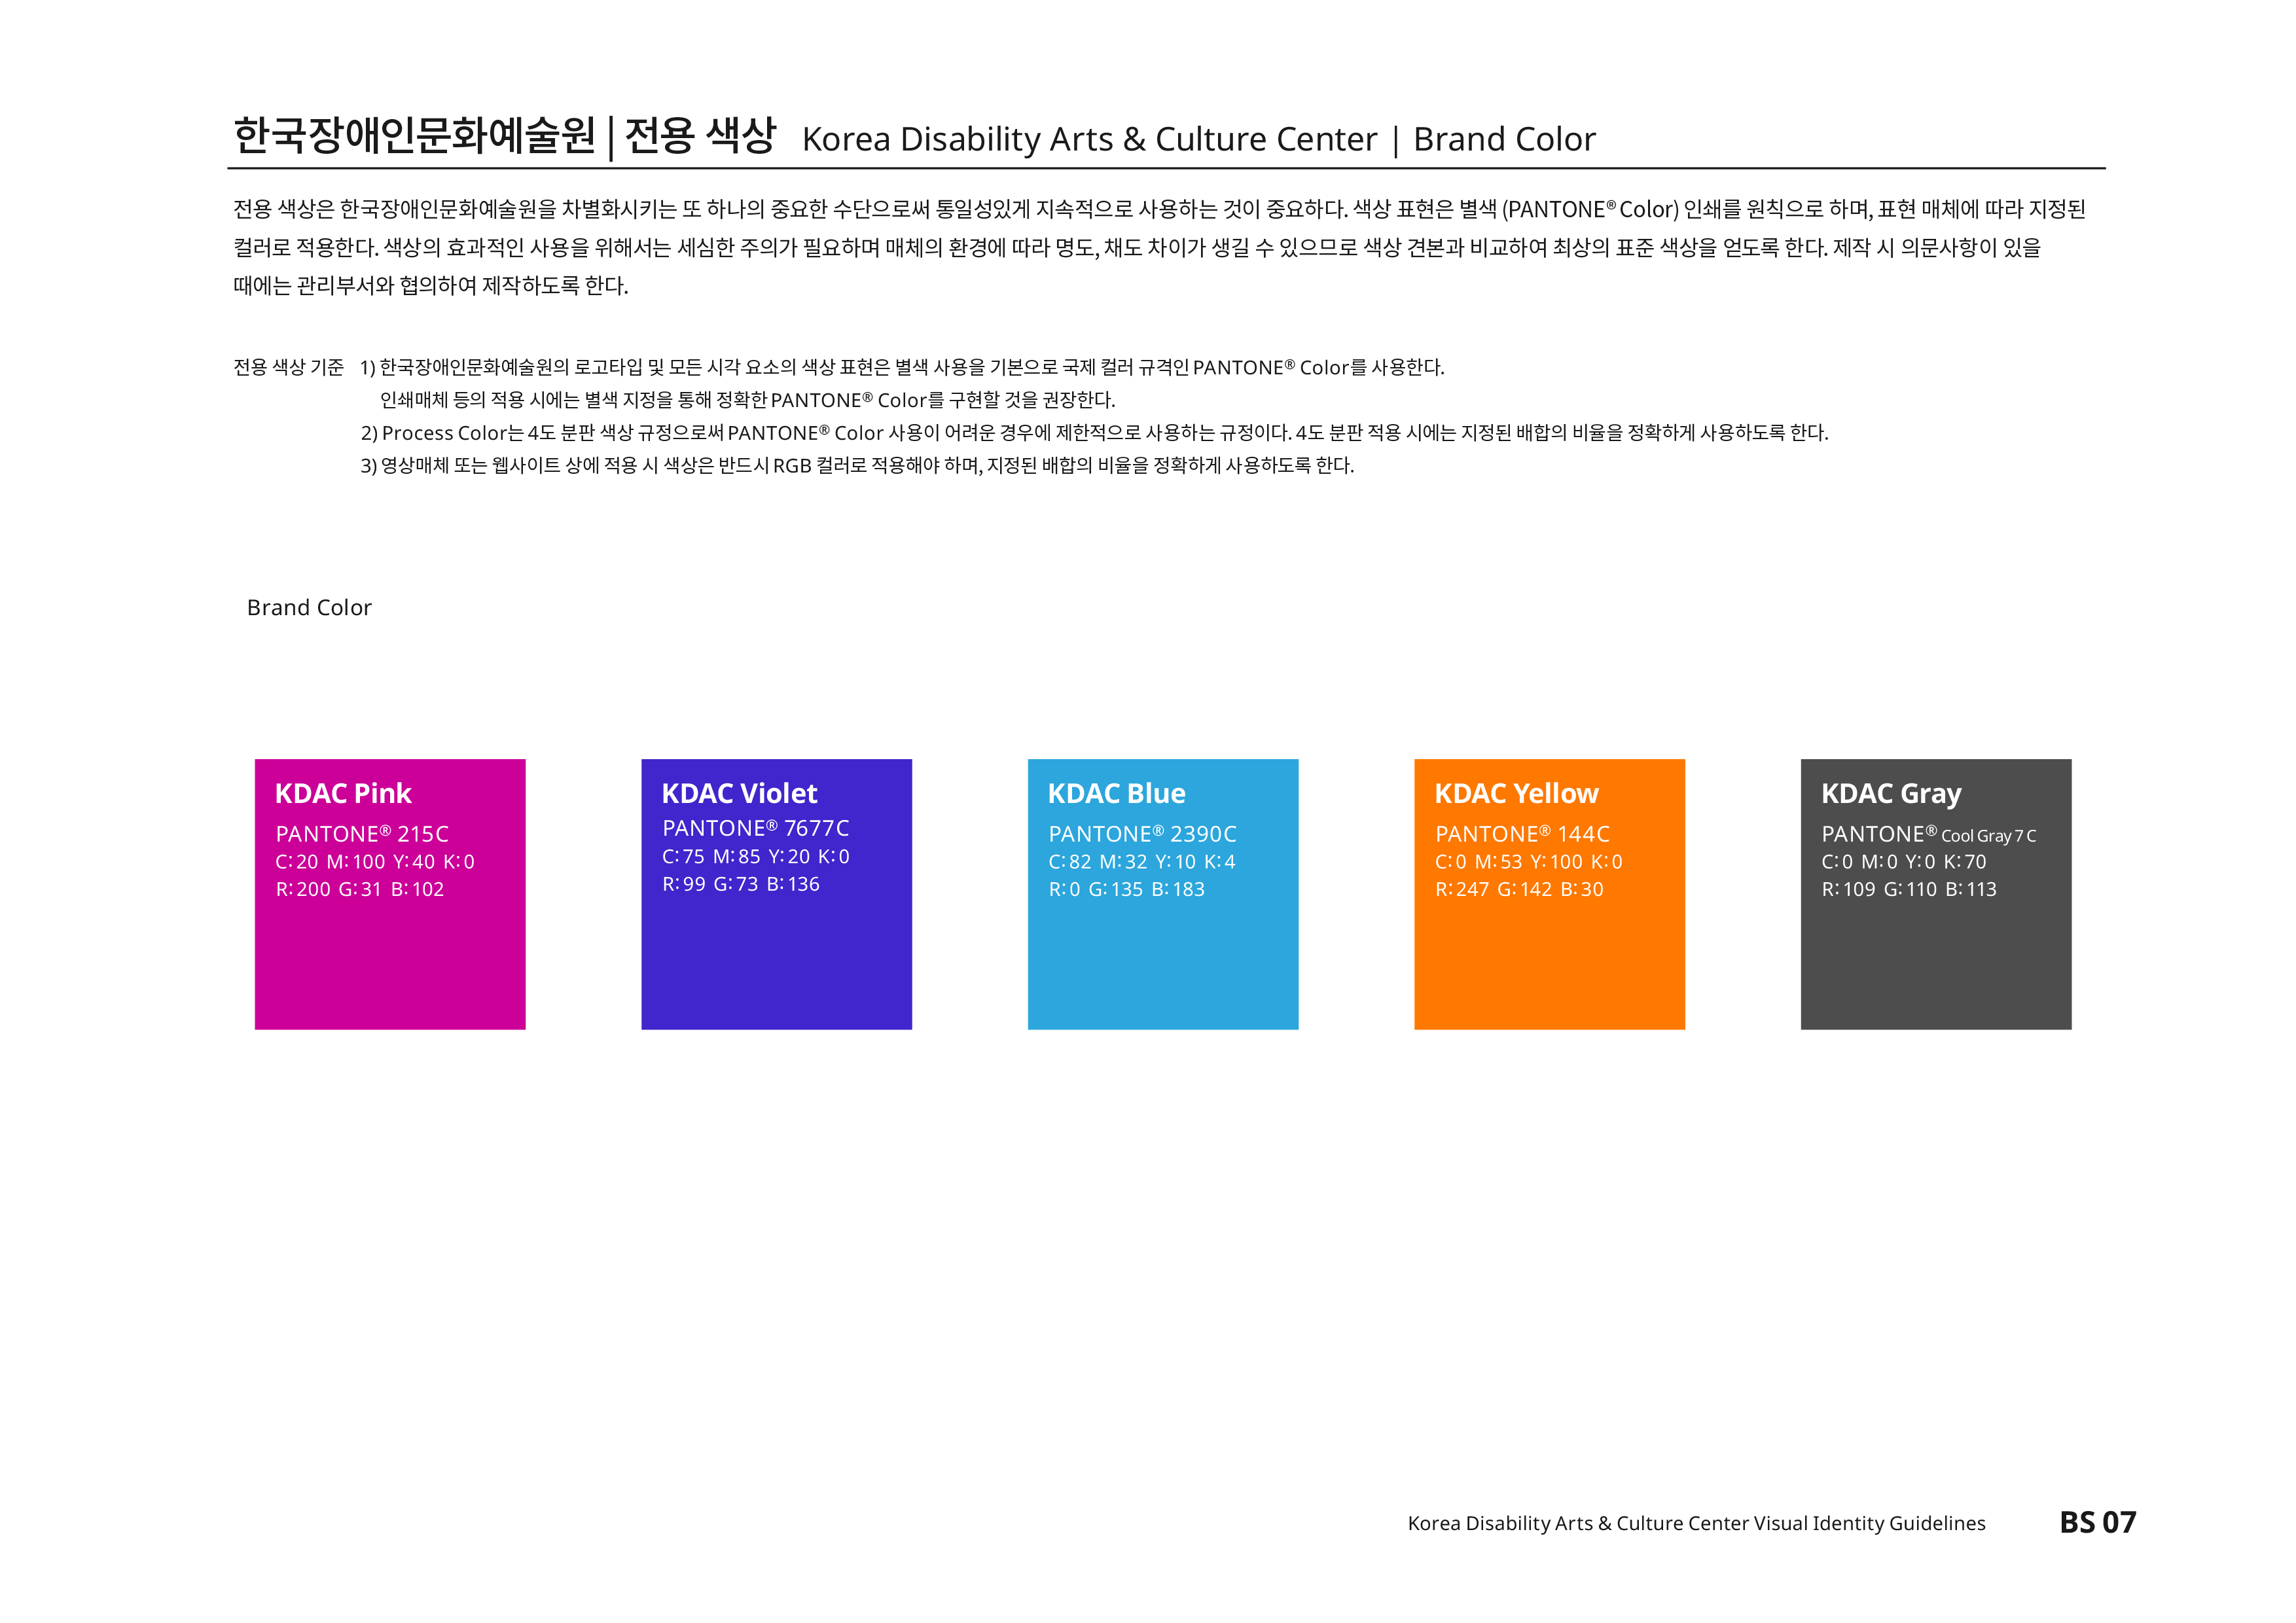 한국장애인문화예술원|전용색상 Korea Disability Arts & Culture Center | Brand Color 전용 색상은 한국장애인문화예술원을 차별화시키는 또 하나의 중요한 수단으로써 통일성있게 지속적으로 사용하는 것이 중요하다. 색상 표현은 별색(PANTONE®Color) 인쇄를 원칙으로 하며,표현 매체에 따라 지정된 컬러로 적용한다. 색상의 효과적인 사용을 위해서는 세심한 주의가 필요하며 매체의 환경에 따라 명도,채도 차이가 생길 수 있으므로 색상 견본과 비교하여 최상의 표준 색상을 얻도록 한다. 제작 시 의문사항이 있을 때에는 관리부서와 협의하여 제작하도록 한다.